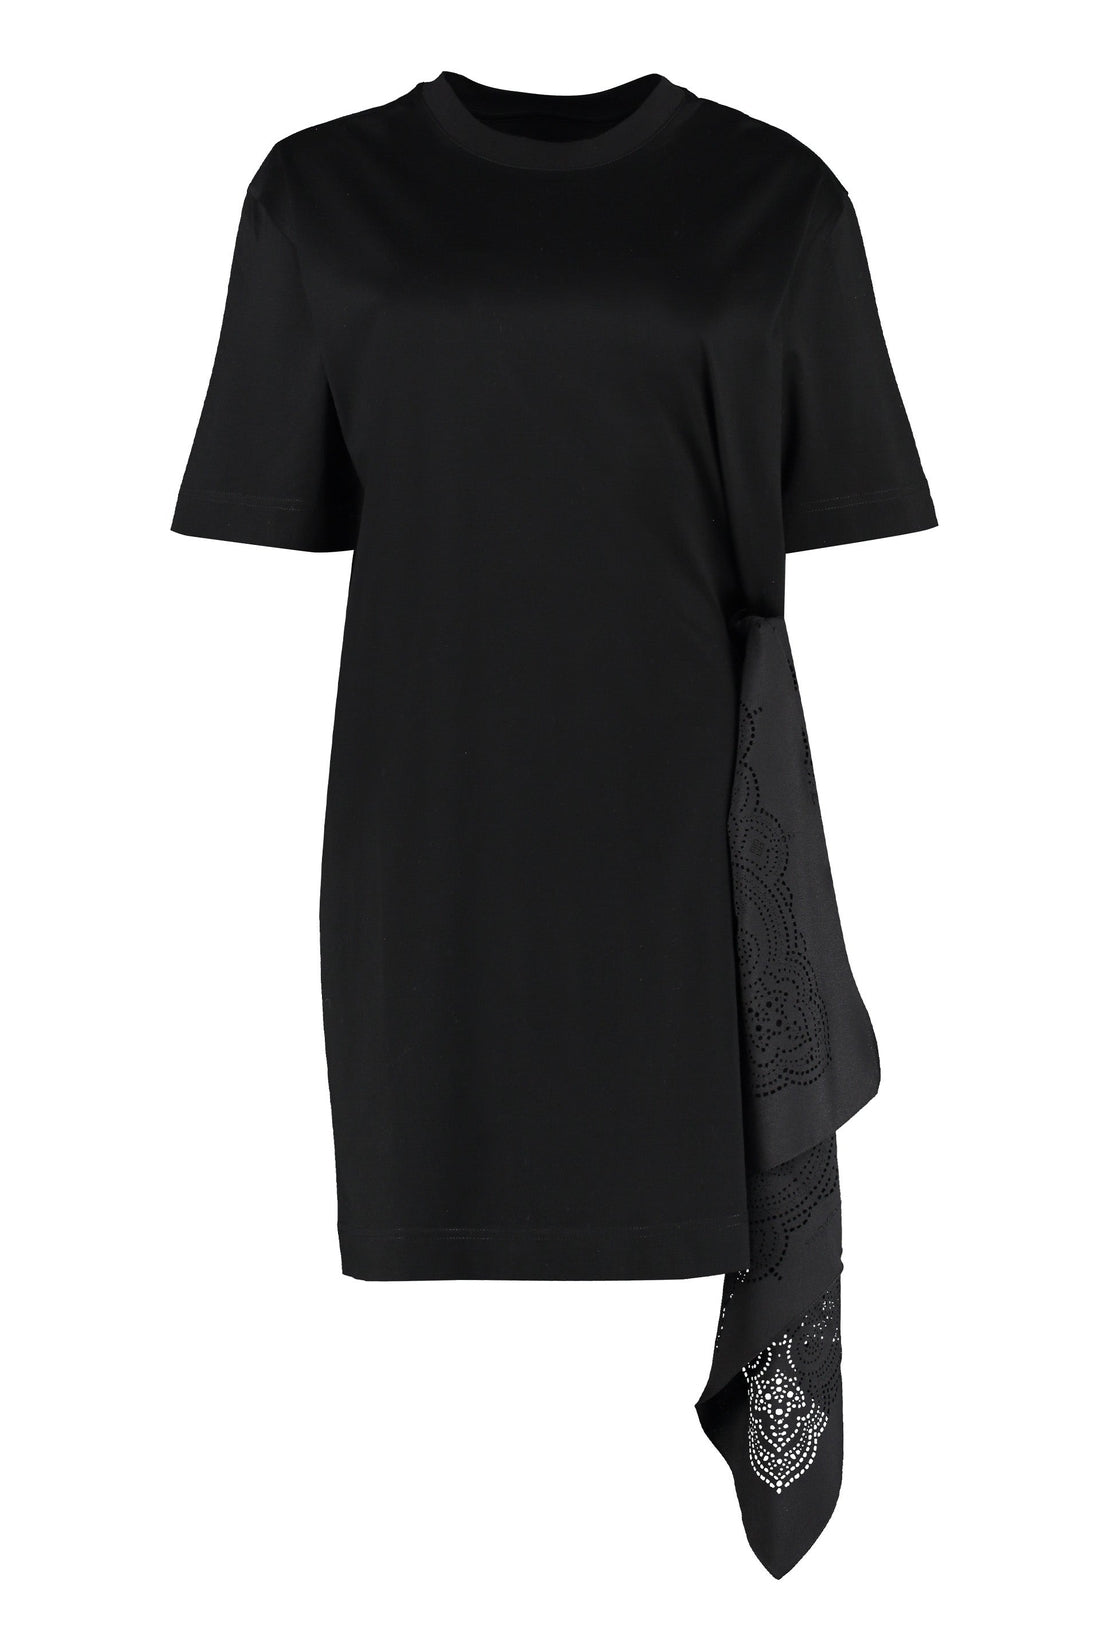 Givenchy-OUTLET-SALE-Cotton t-shirt dress-ARCHIVIST